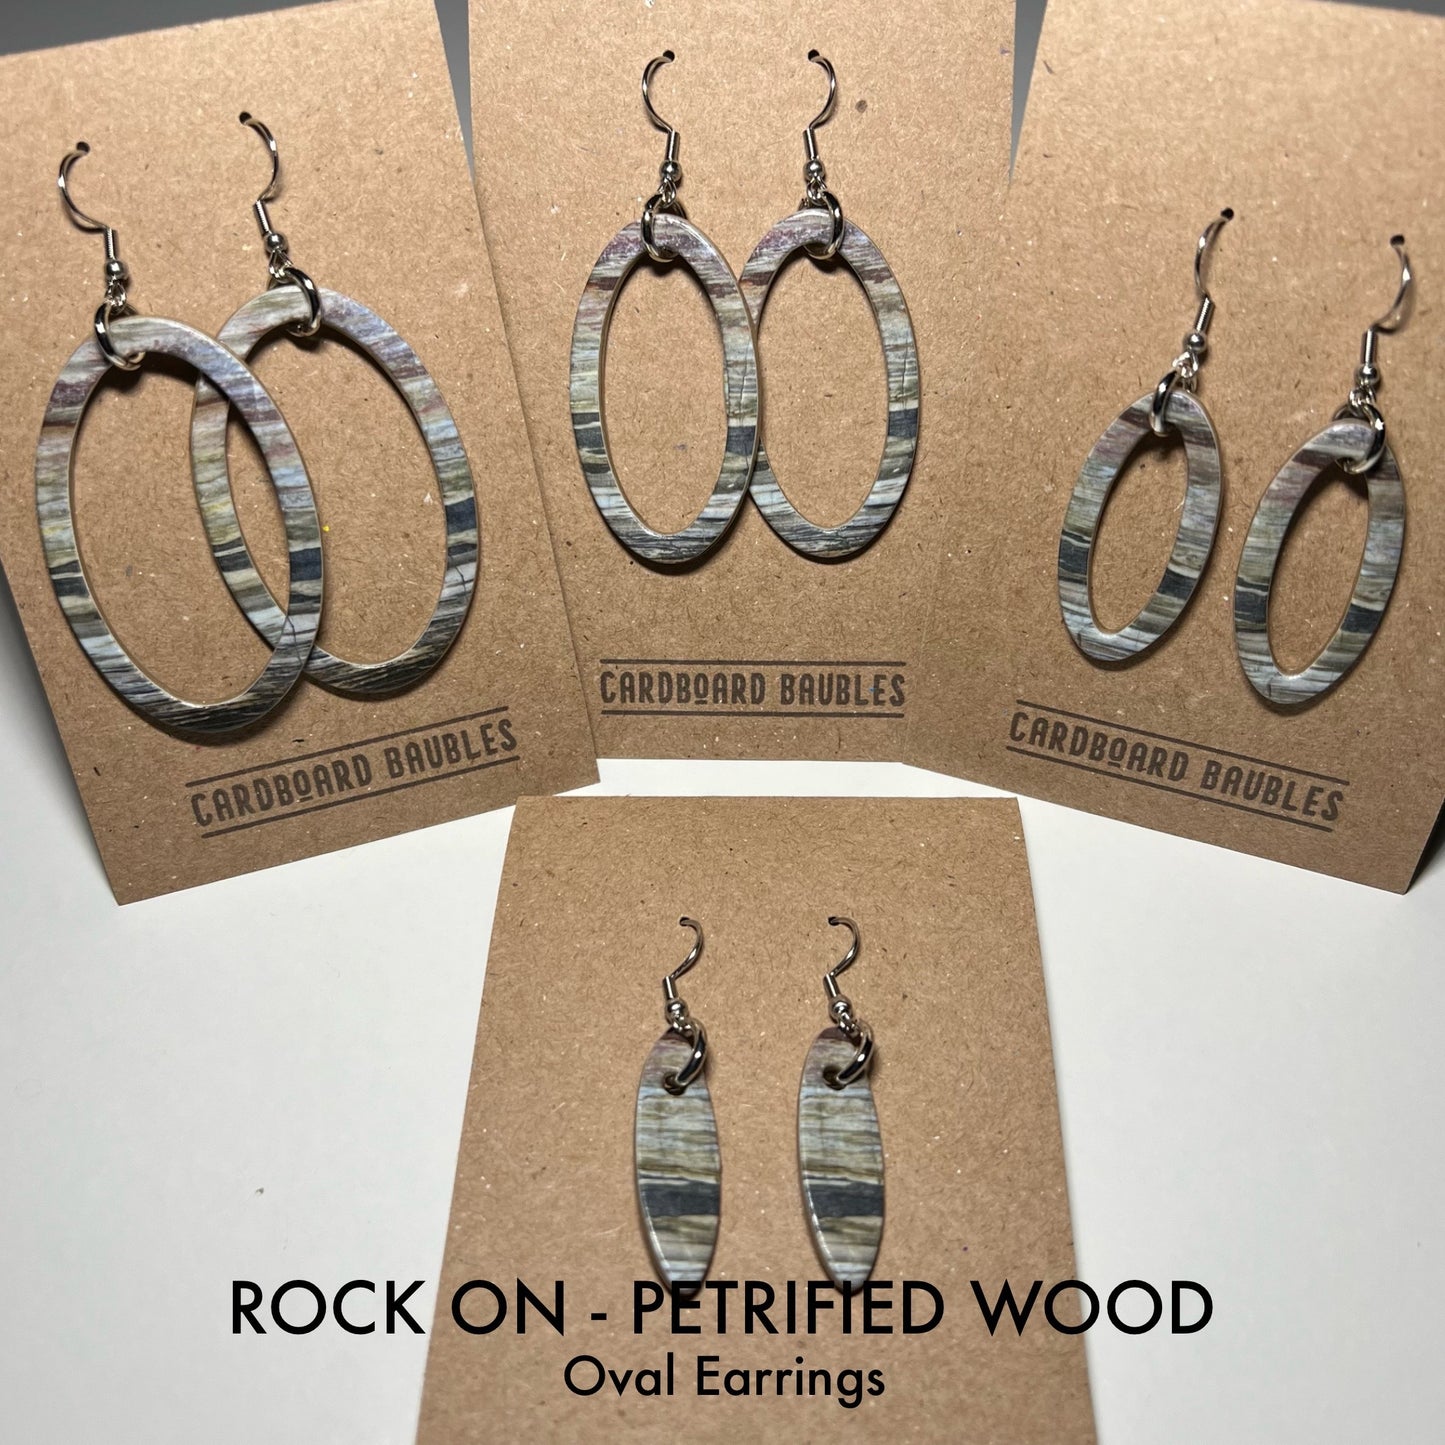 ROCK ON - PETRIFIED WOOD - Oval Cardboard Baubles Earrings